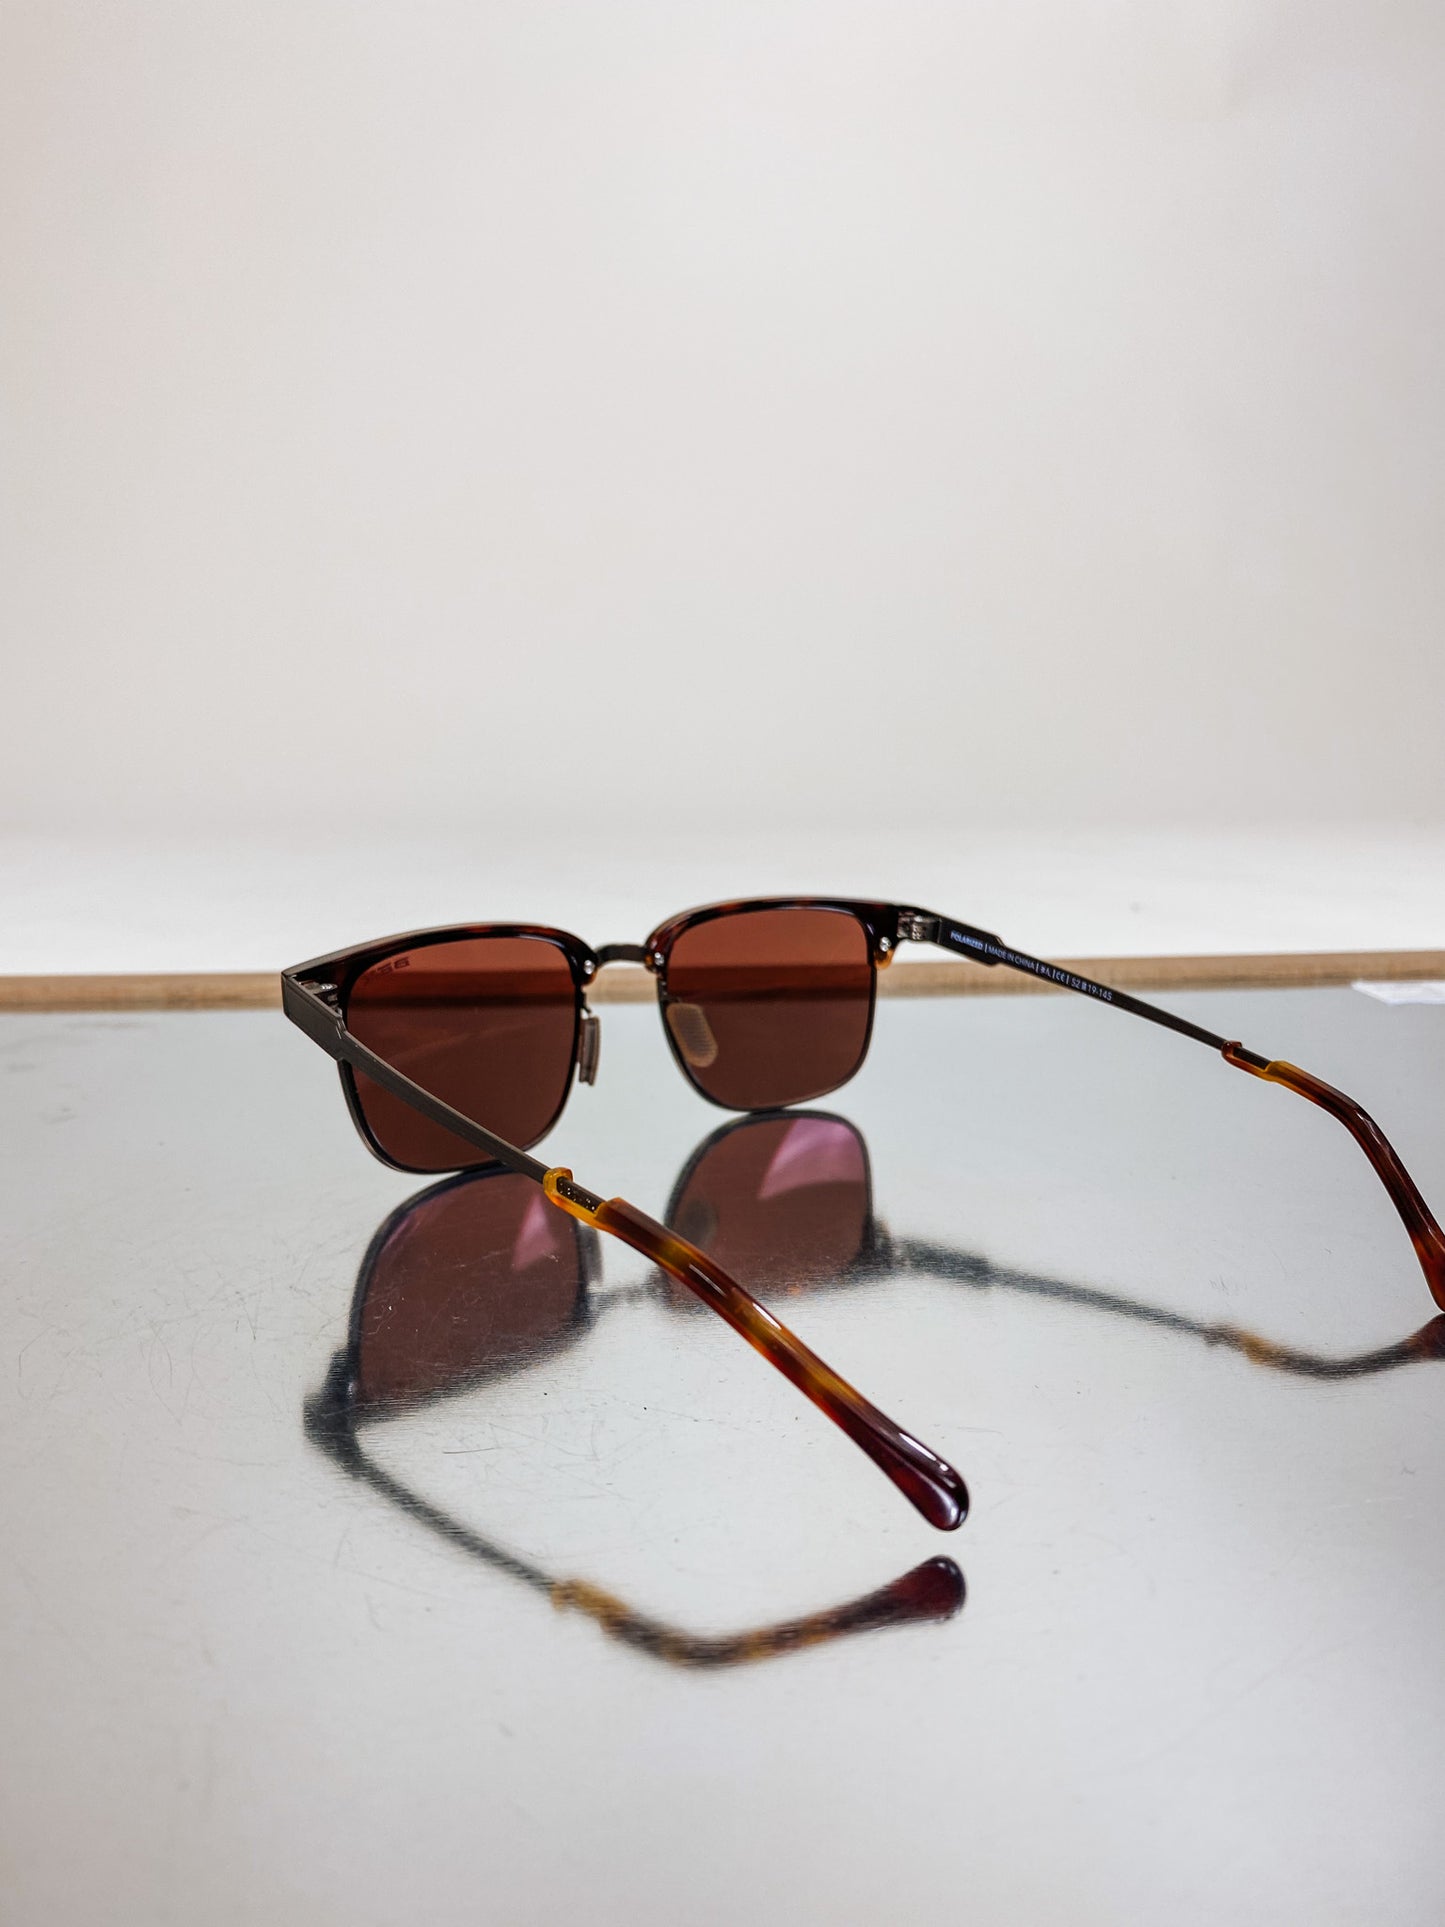 Roger Tortoise Brown Sunglasses